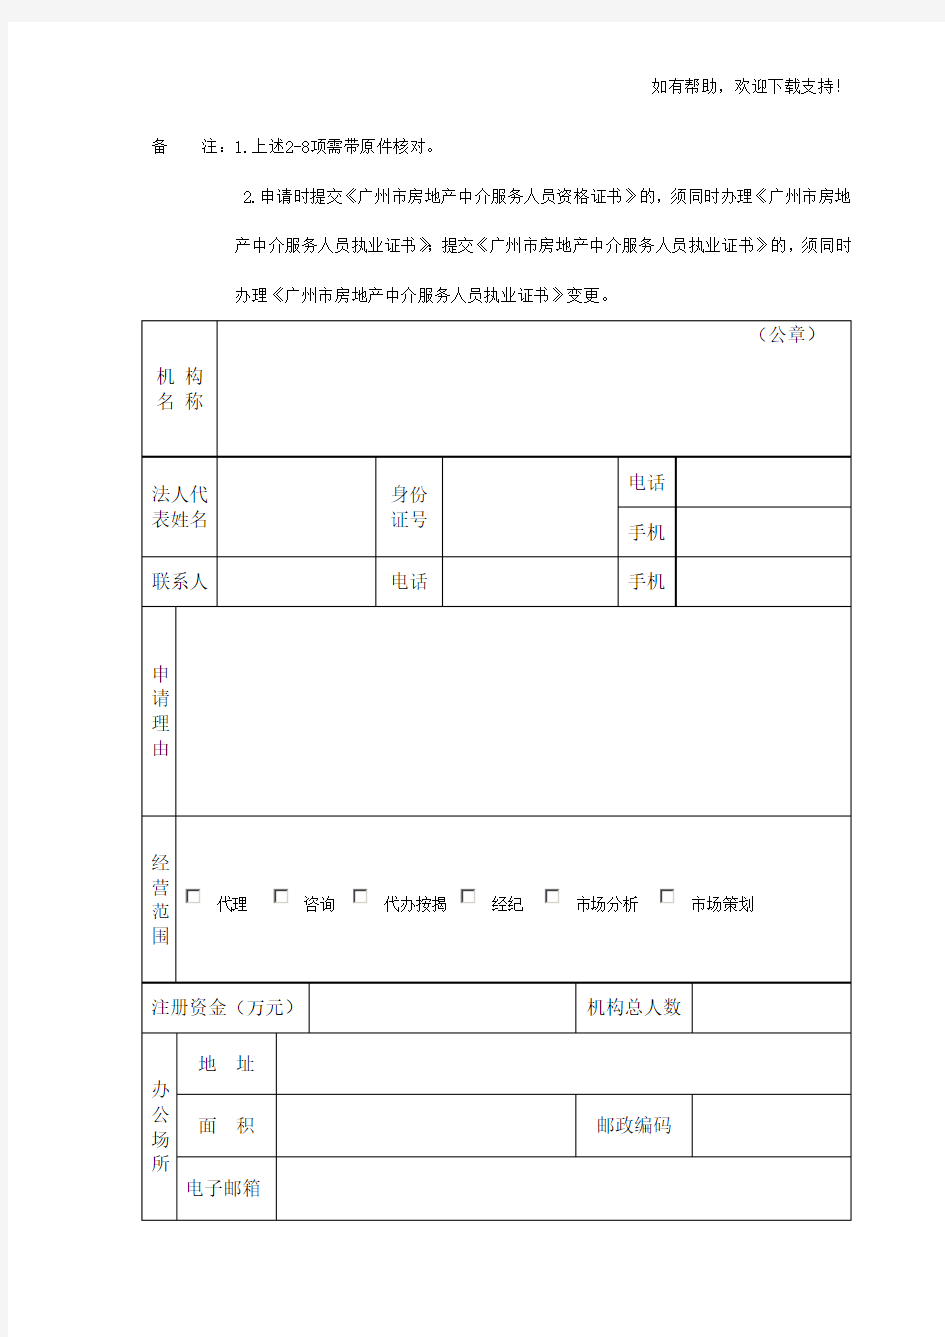 广州房地产中介服务机构资质备案